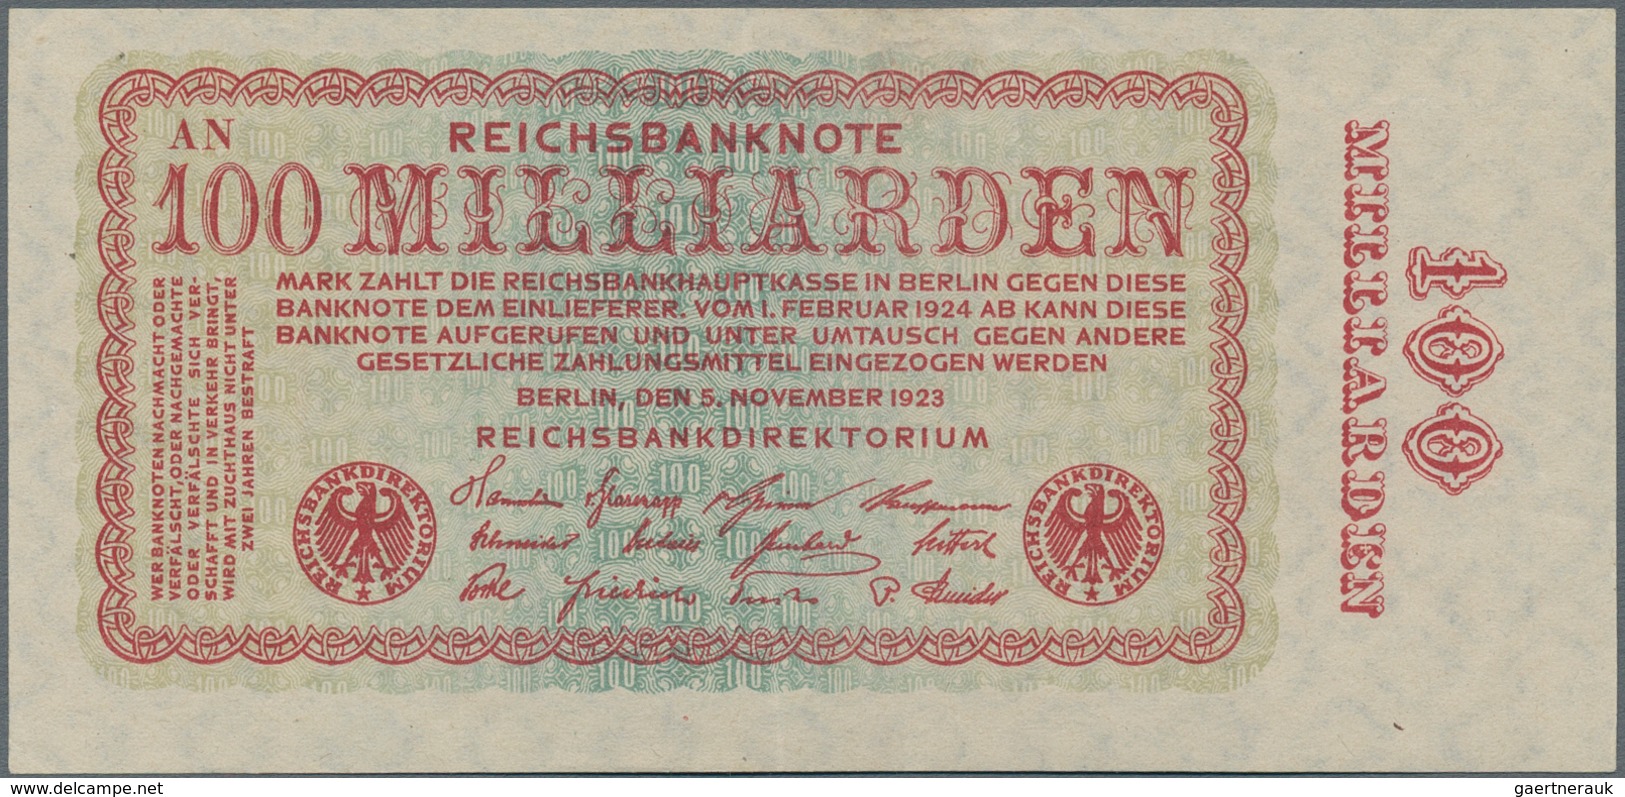 Deutschland - Deutsches Reich bis 1945: Mappe mit mehr als 180 Banknoten Deutsches Reich bis zur Hoc